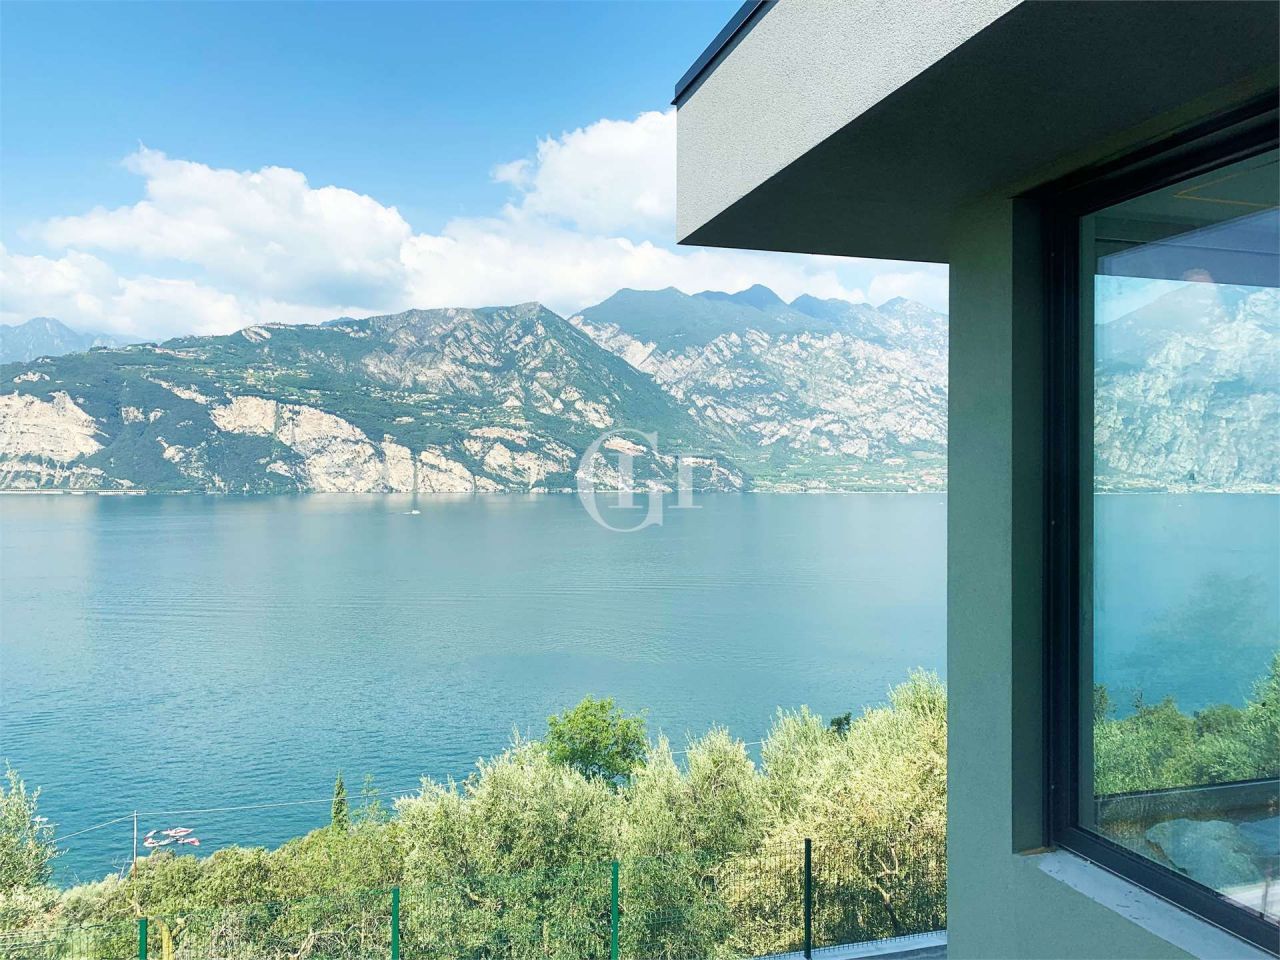 Villa por Lago de Garda, Italia, 236 m2 - imagen 1